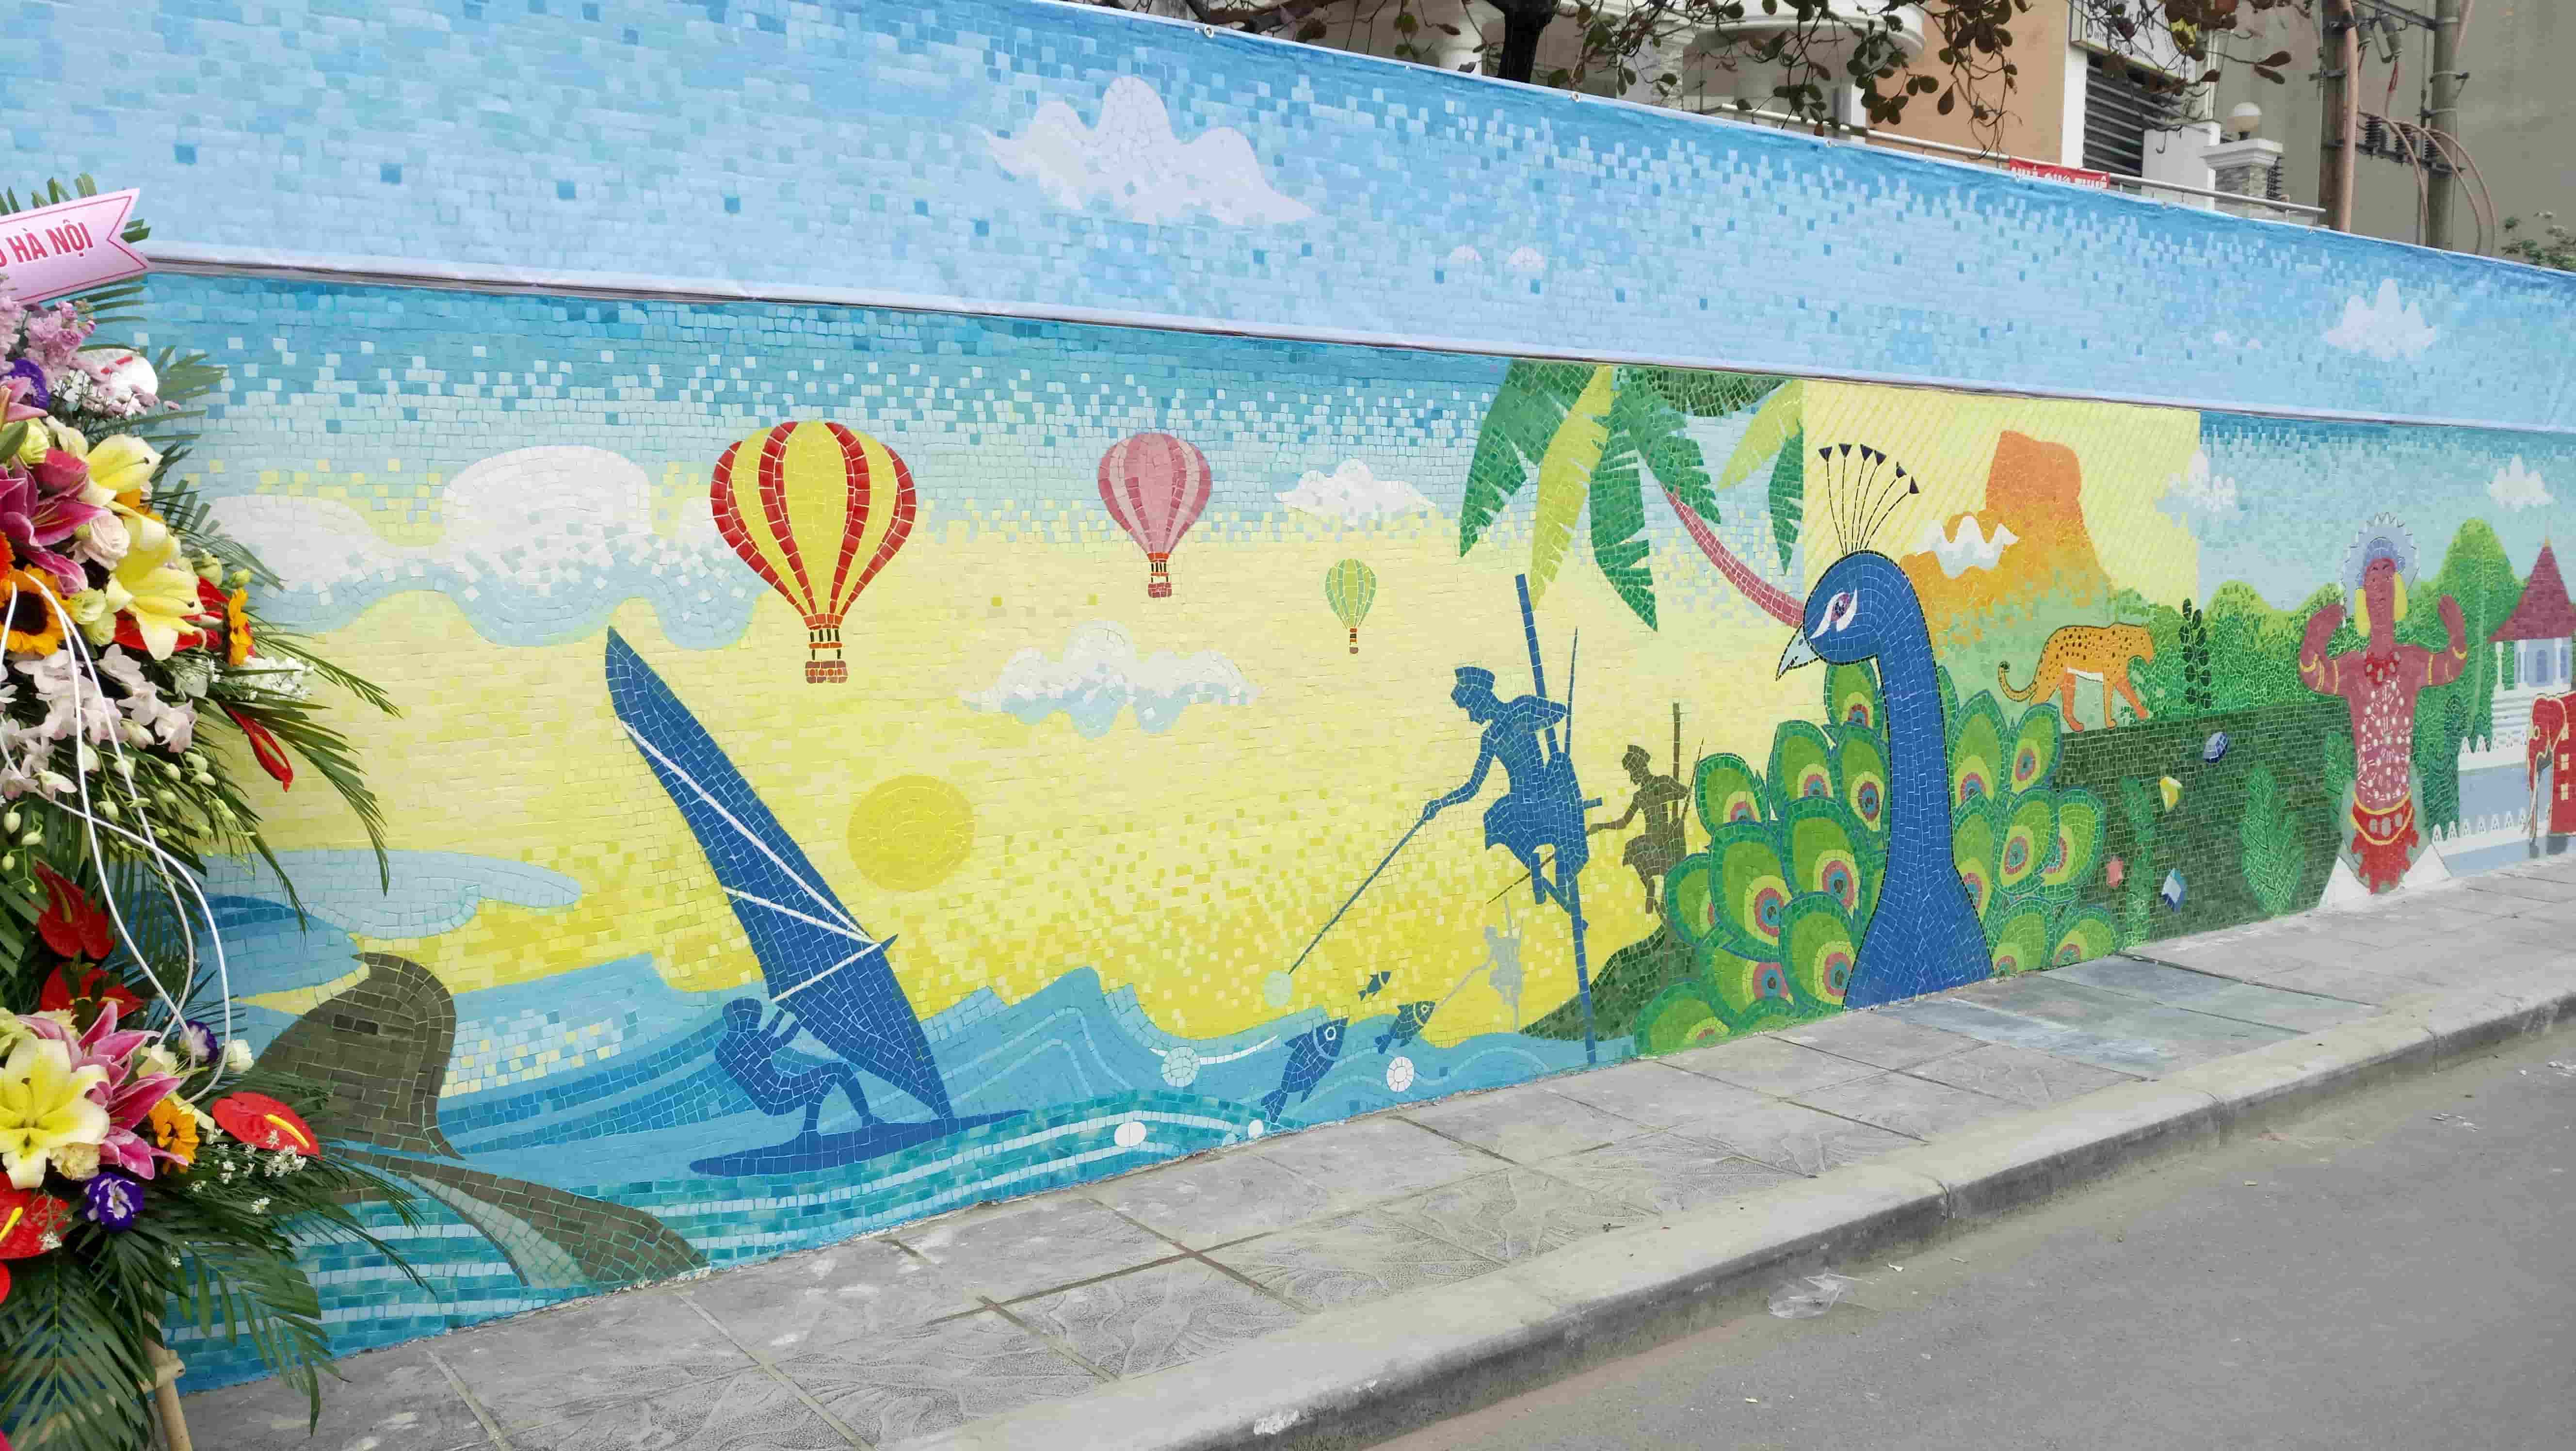 Image 05 - The Sri Lanka Mural on Ha Noi Mosaic Art Wall